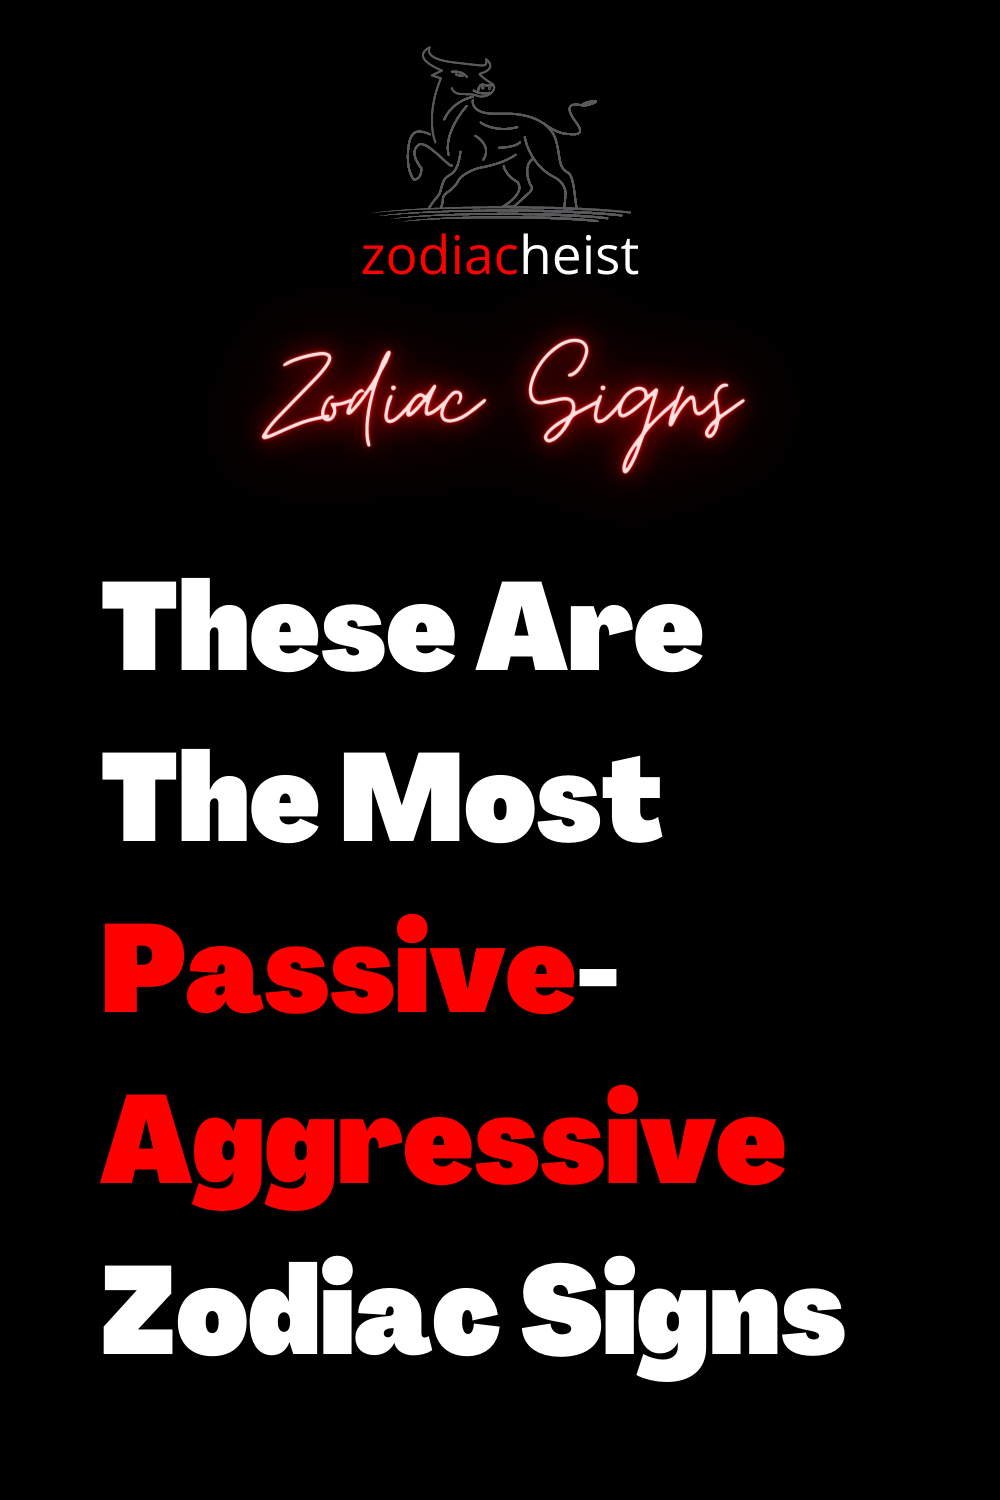 These Are The Most Passive-Aggressive Zodiac Signs